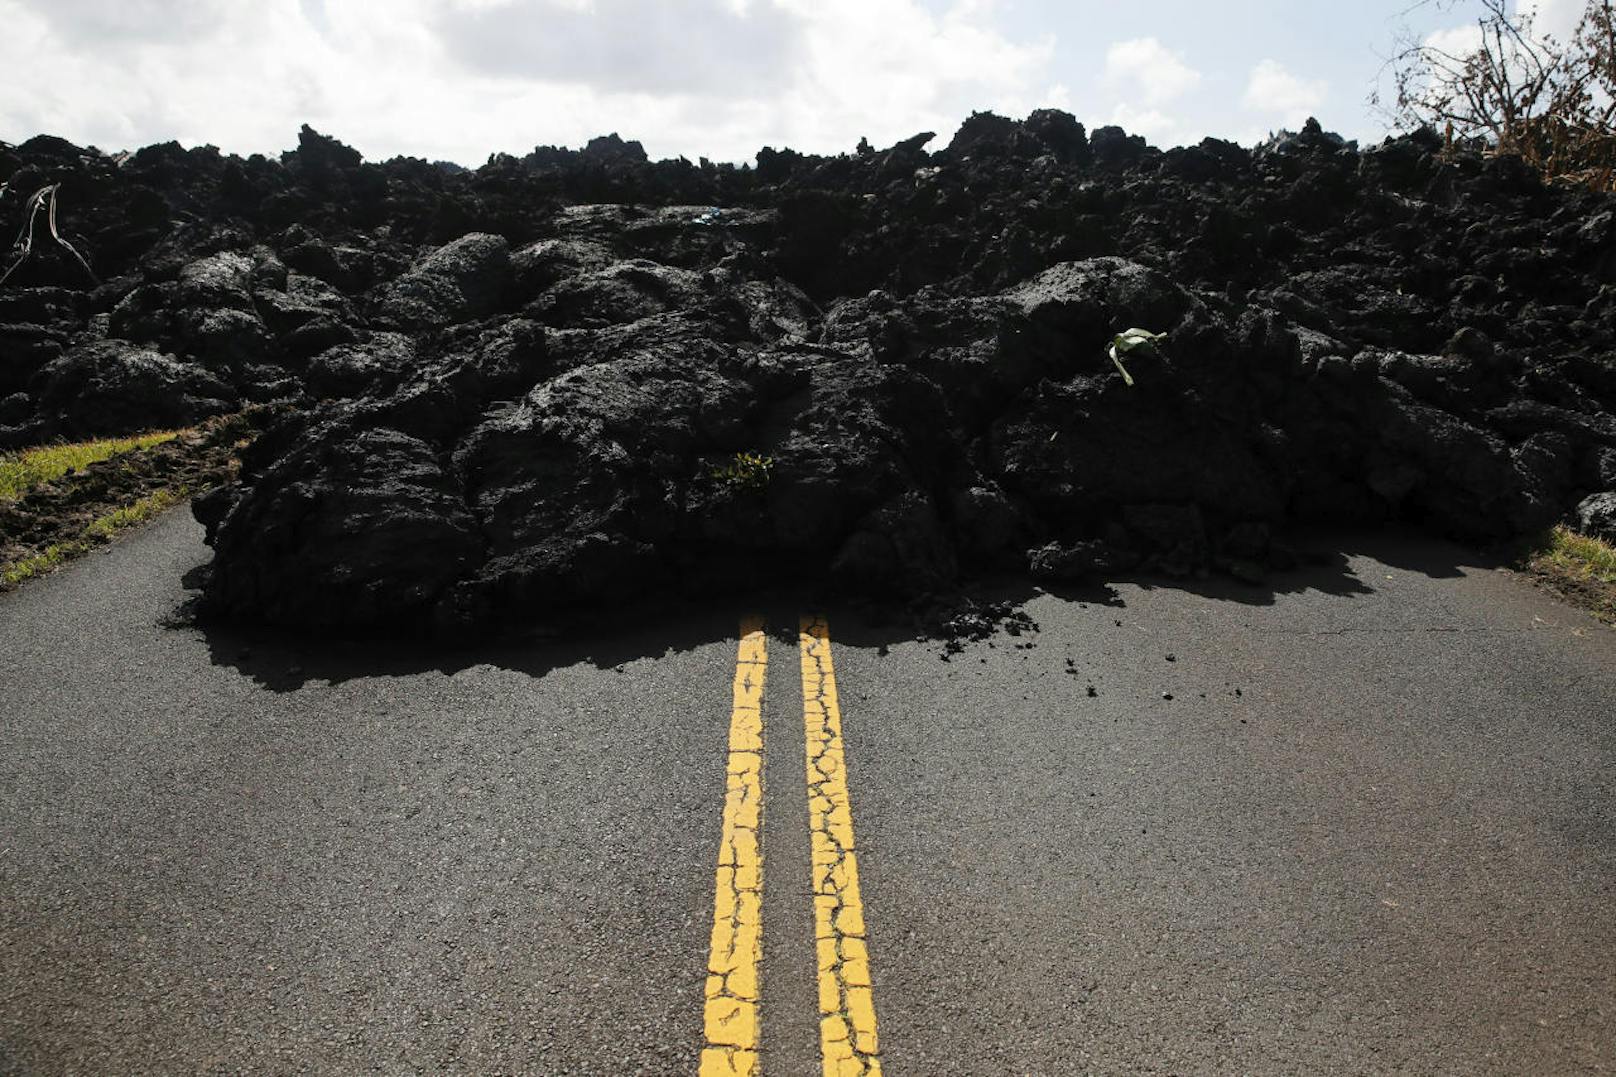 Der Vulkan Kilauea auf Hawaii ist seit Anfang Mai gefährlich aktiv. Tausende Bewohner mussten schon evakuiert werden, Häuser und Straßen von Lavaströmen zerstört.